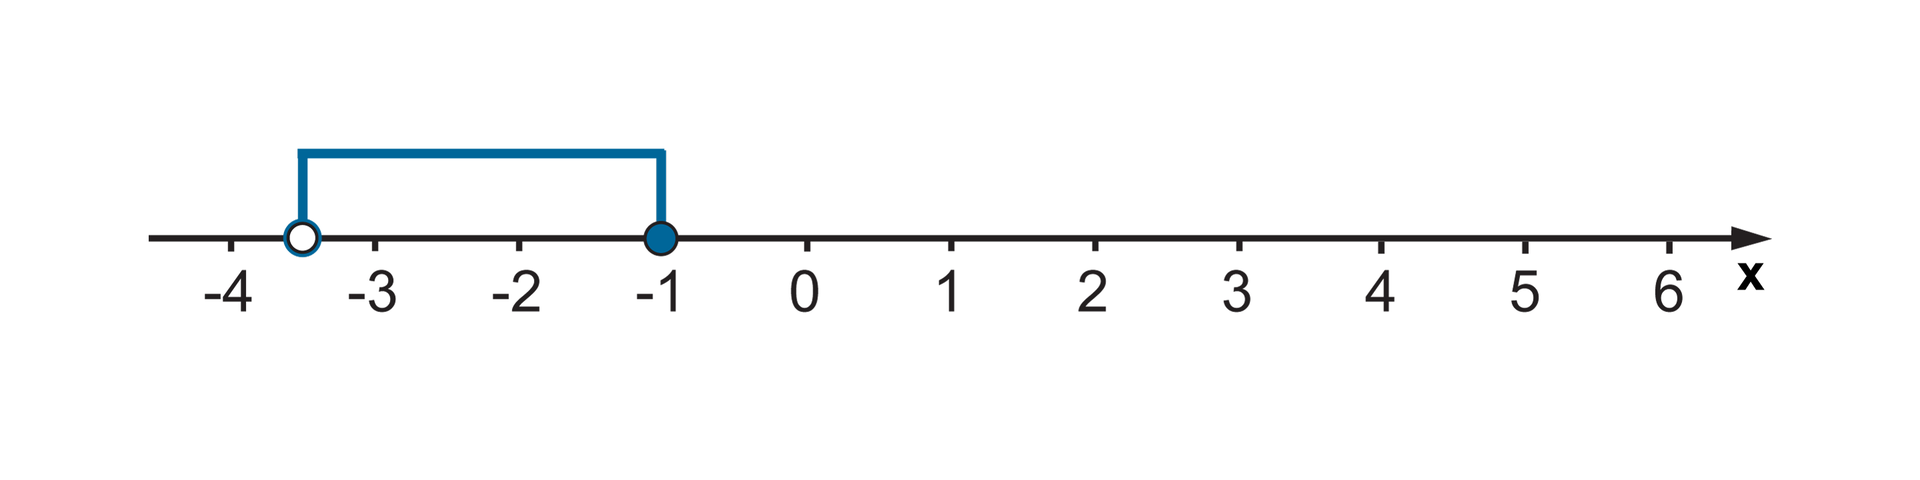 Zaznaczamy przedział poziomą linią od minus trzech i pół do minus jednego. Liczbę -3,5 zaznaczamy niezamalowanym kółkiem, a liczbę -1 zaznaczamy zamalowanym kółkiem.